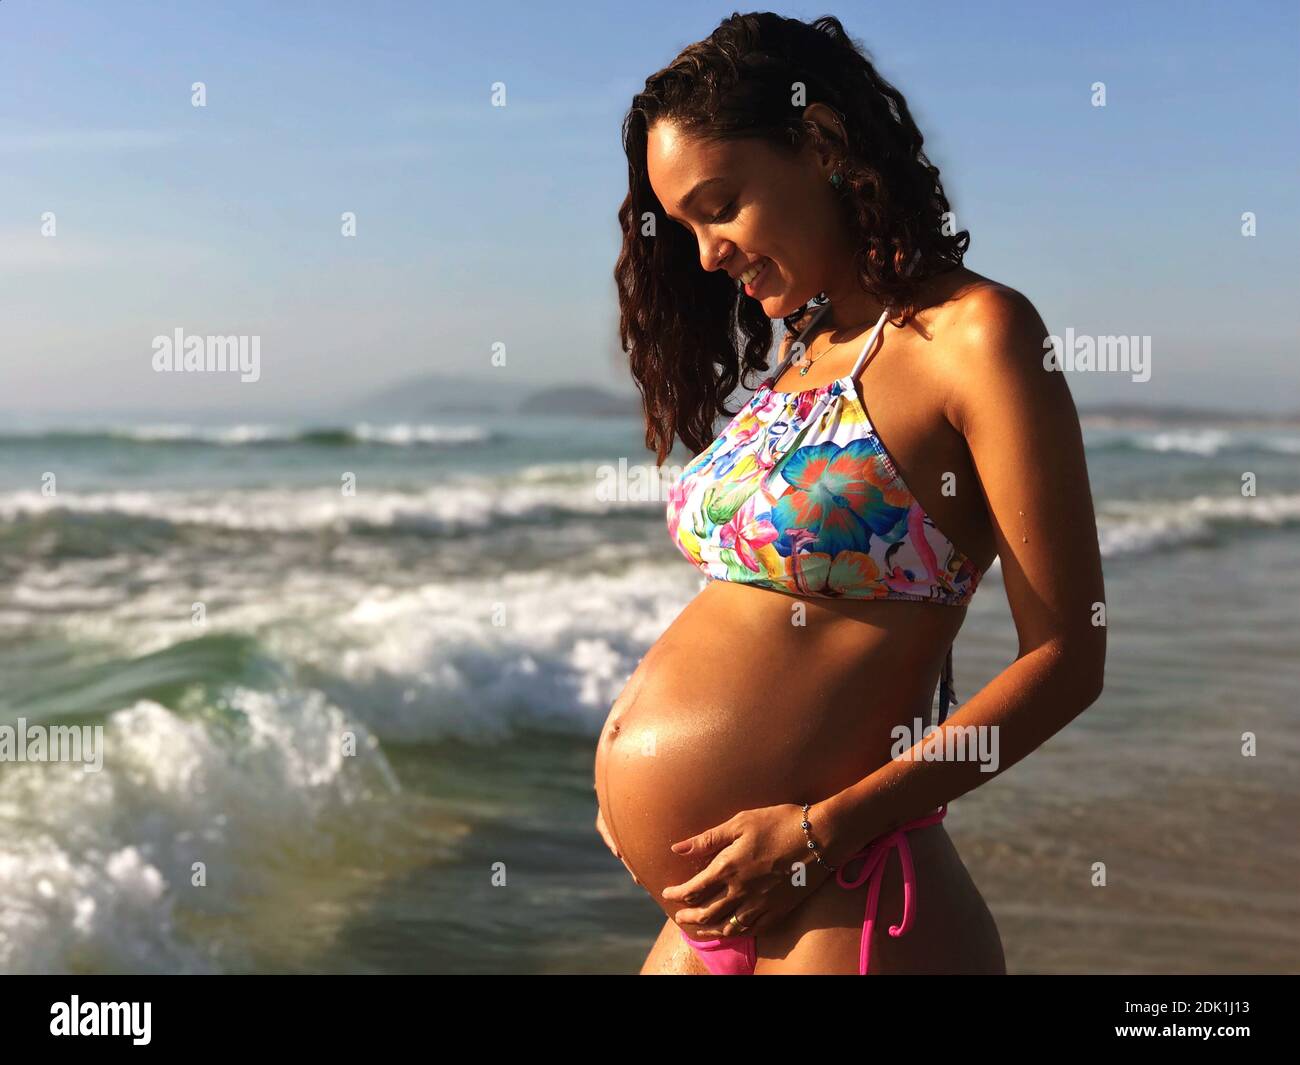 Schwangere, Die Bikini Trägt, Während Sie Am Strand Gegen Den Blauen Himmel  Steht Stockfotografie - Alamy